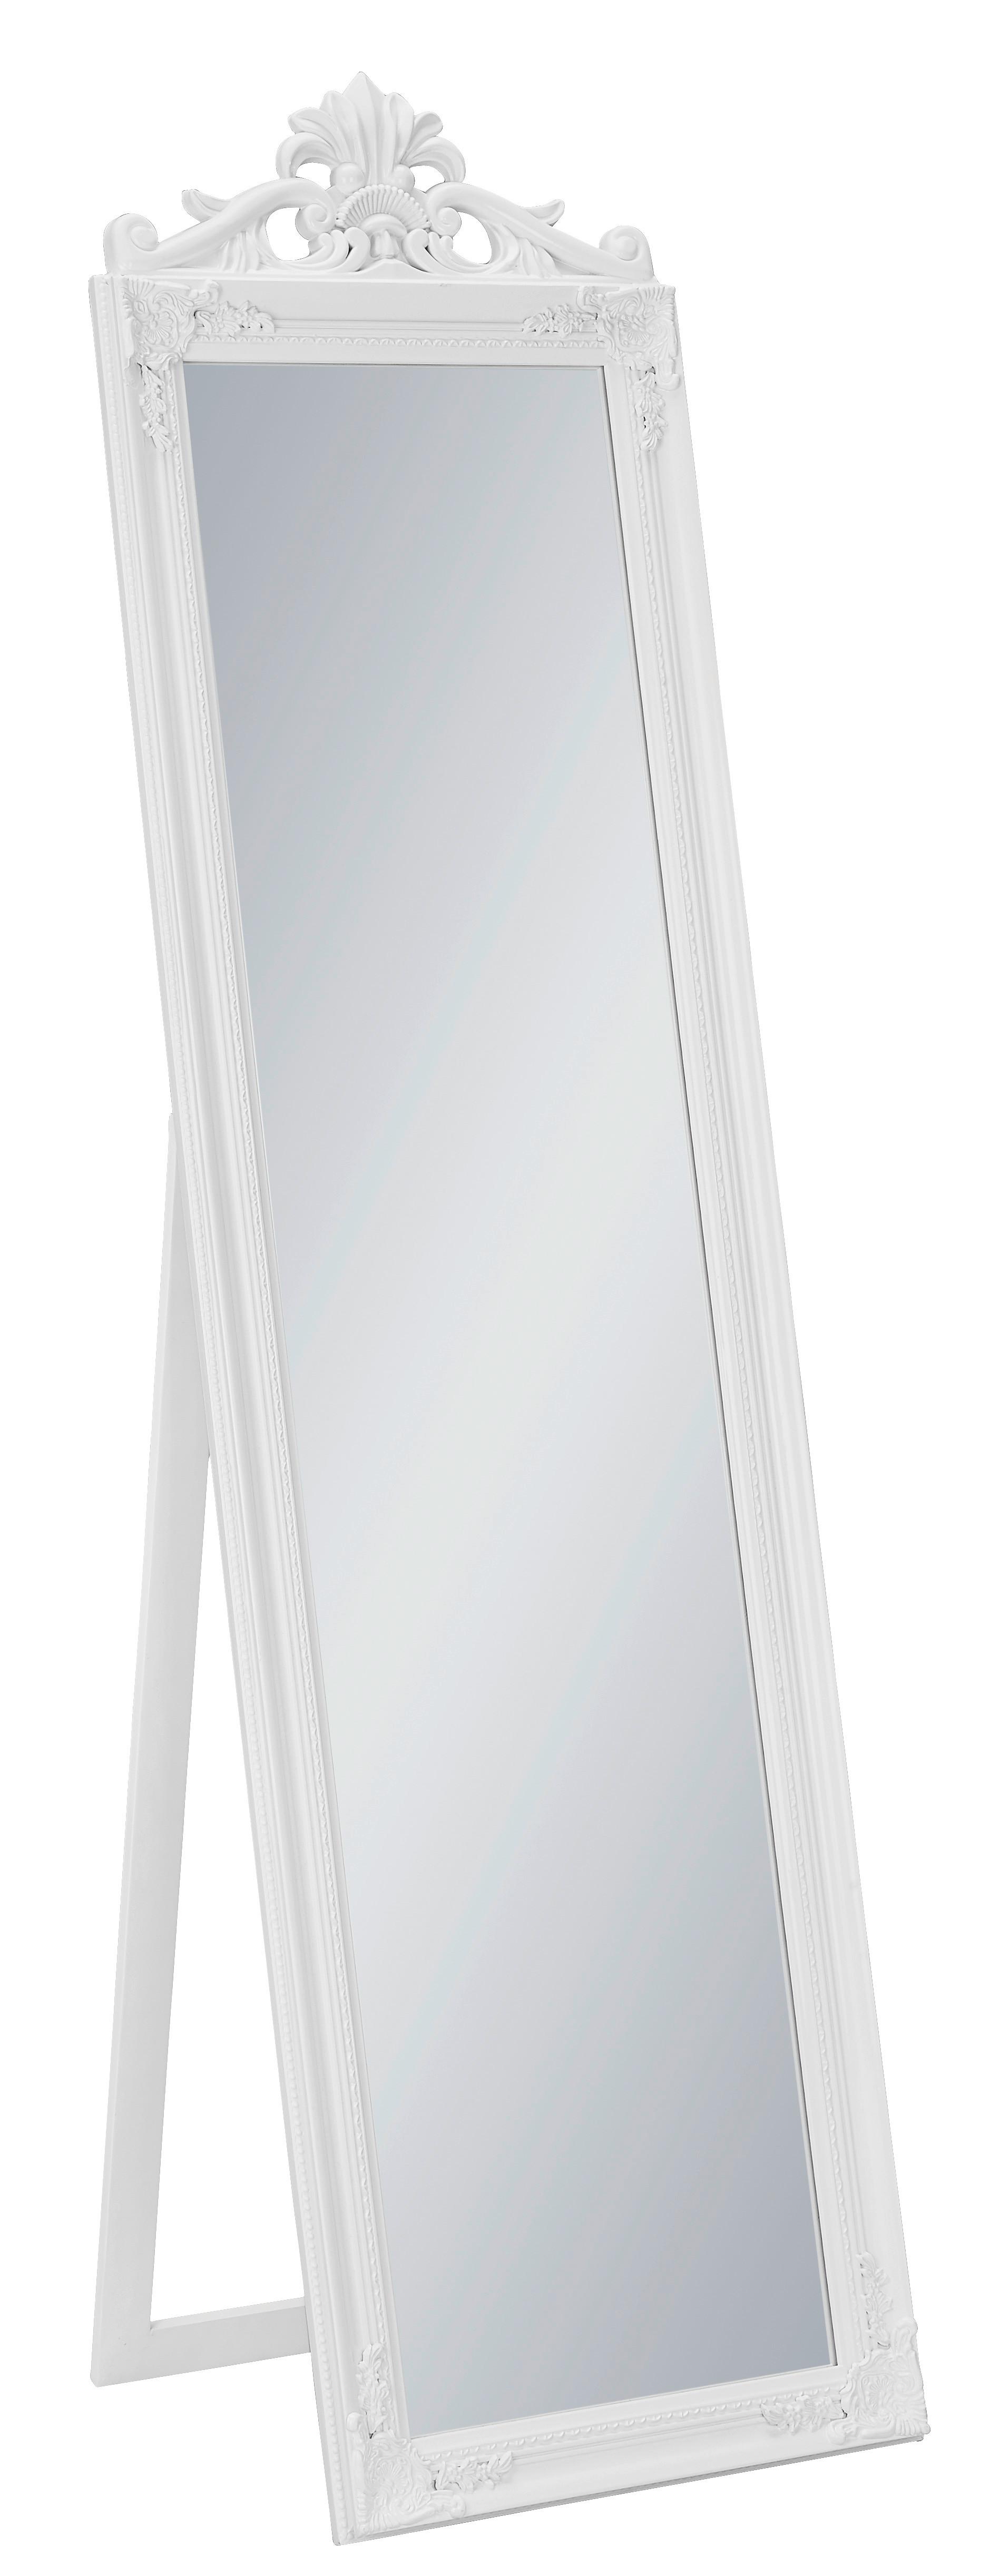 SAMOSTOJEĆE OGLEDALO BAROCK - bijela, staklo/drvo (45/170/3,5cm) - Modern Living